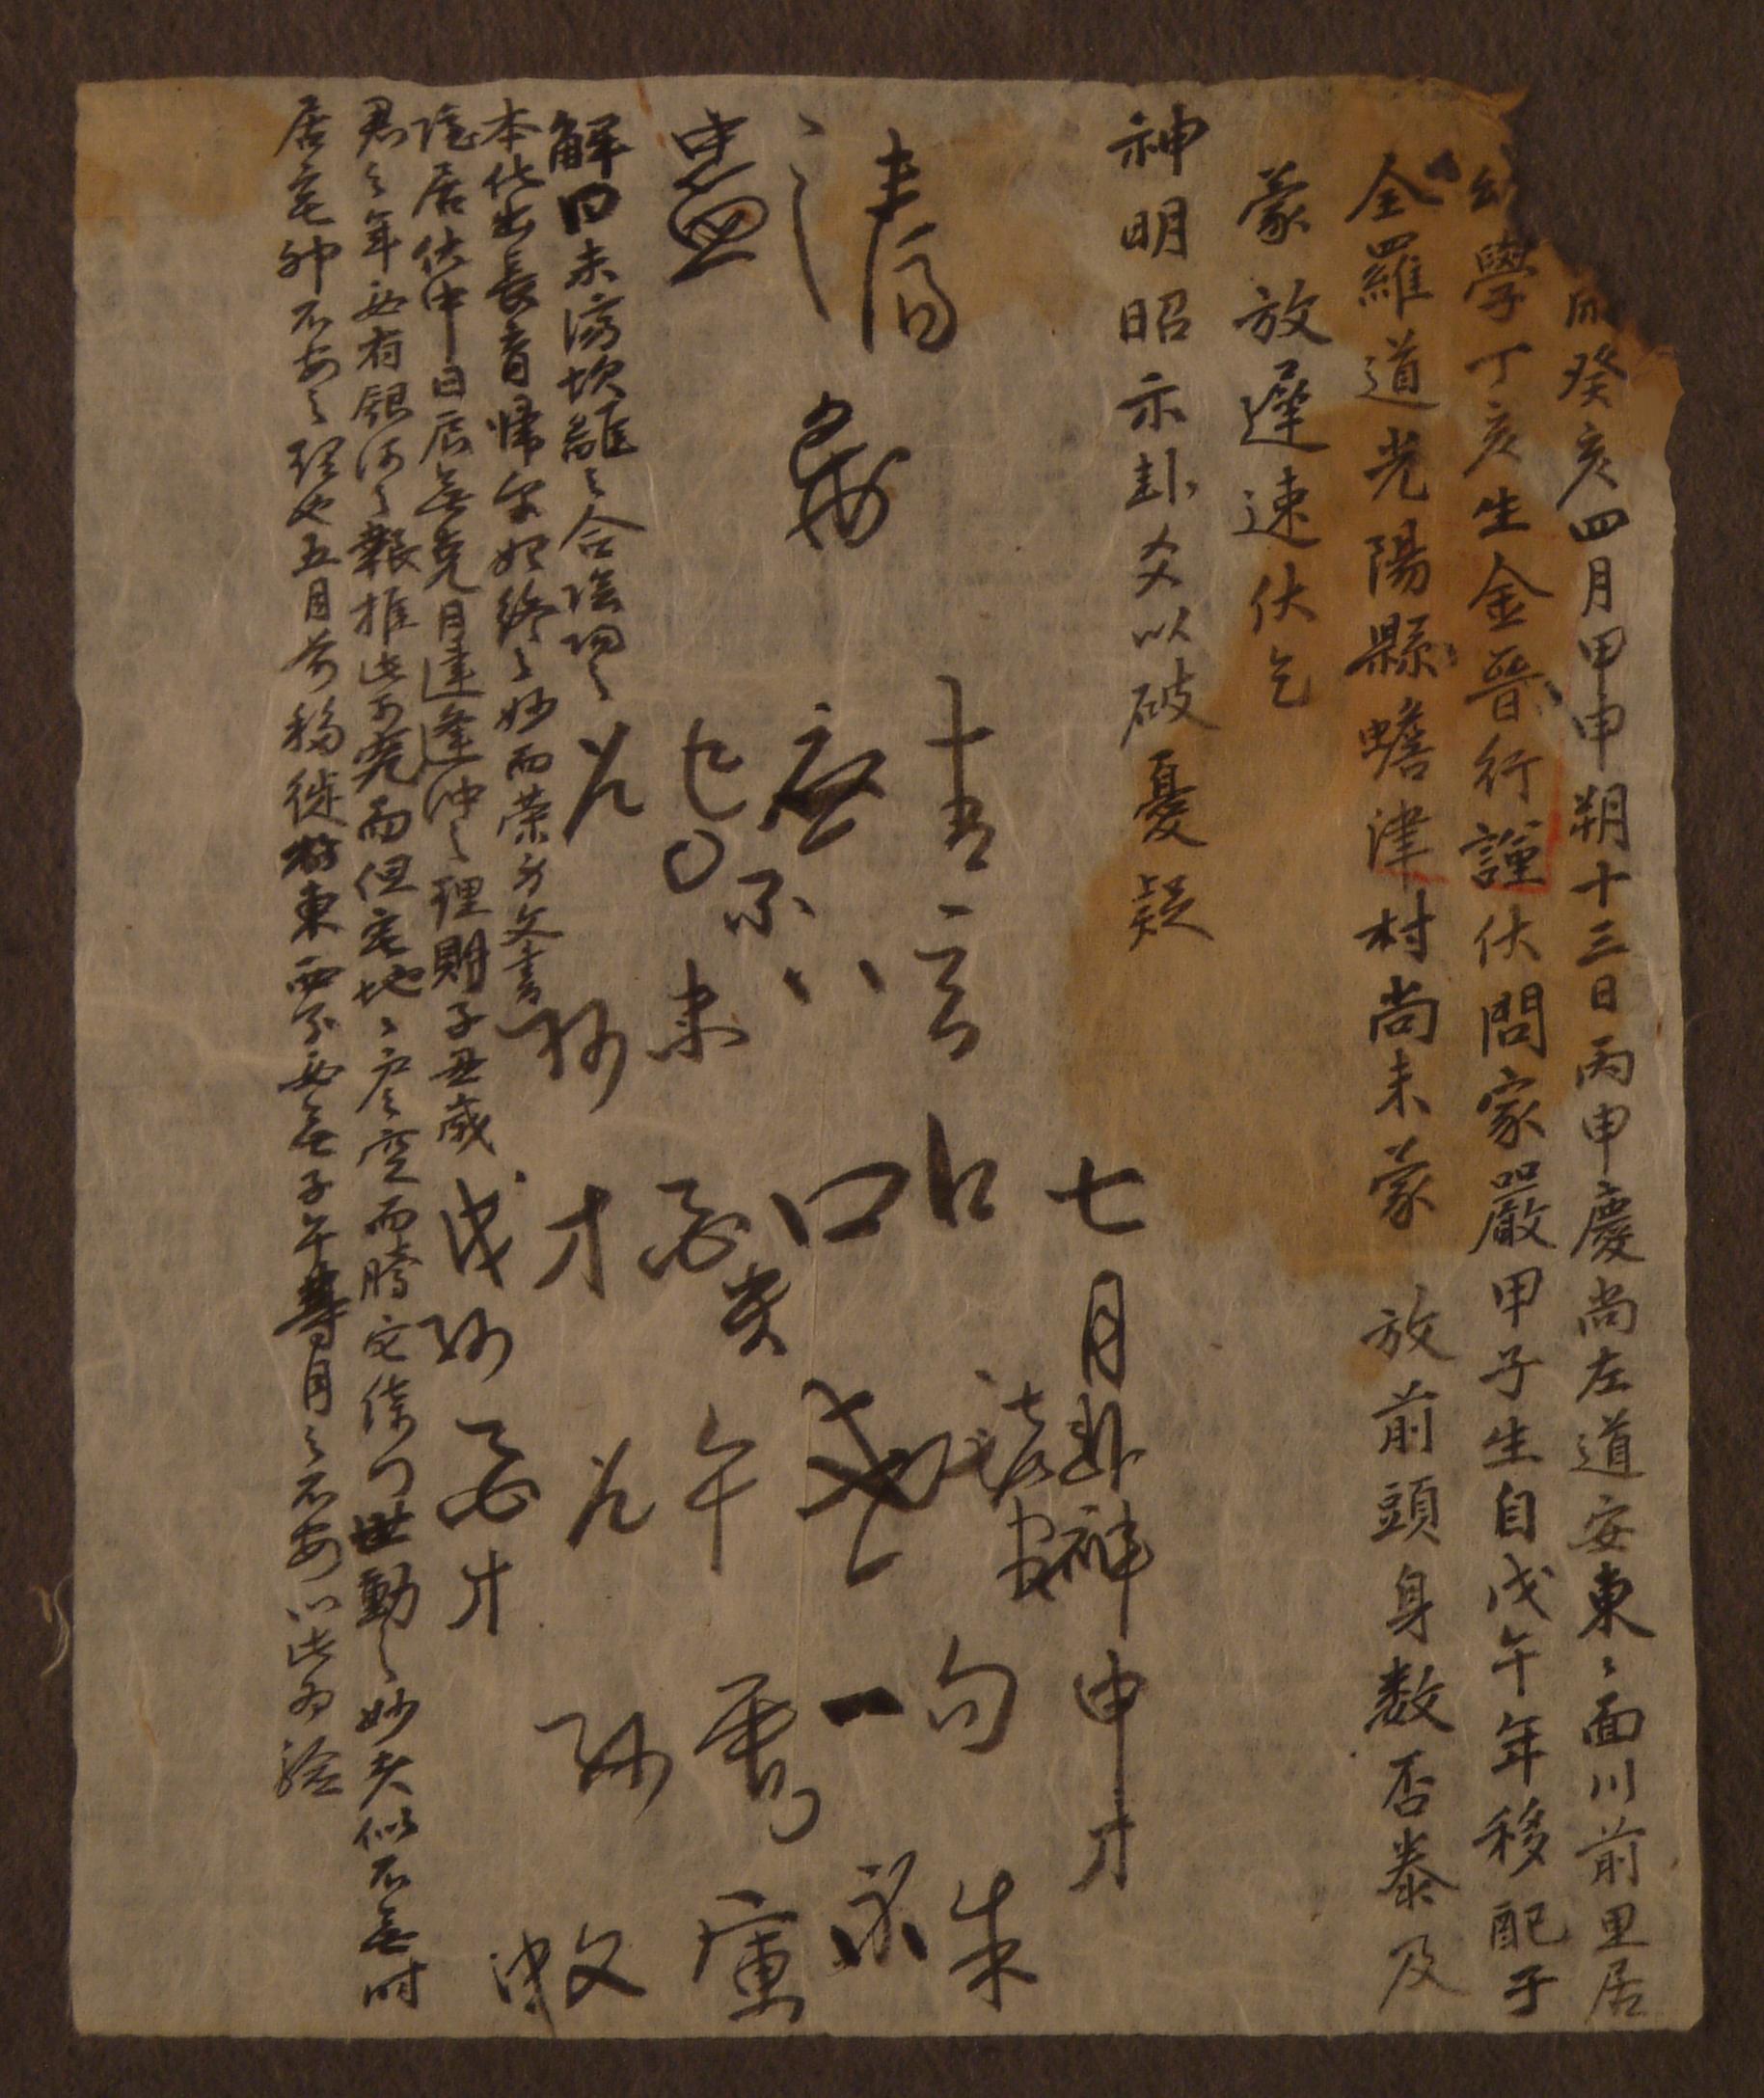 김진행(金晉行)이 계해년에 유배된 아버지의 방면 여부에 관해 점복한 문서